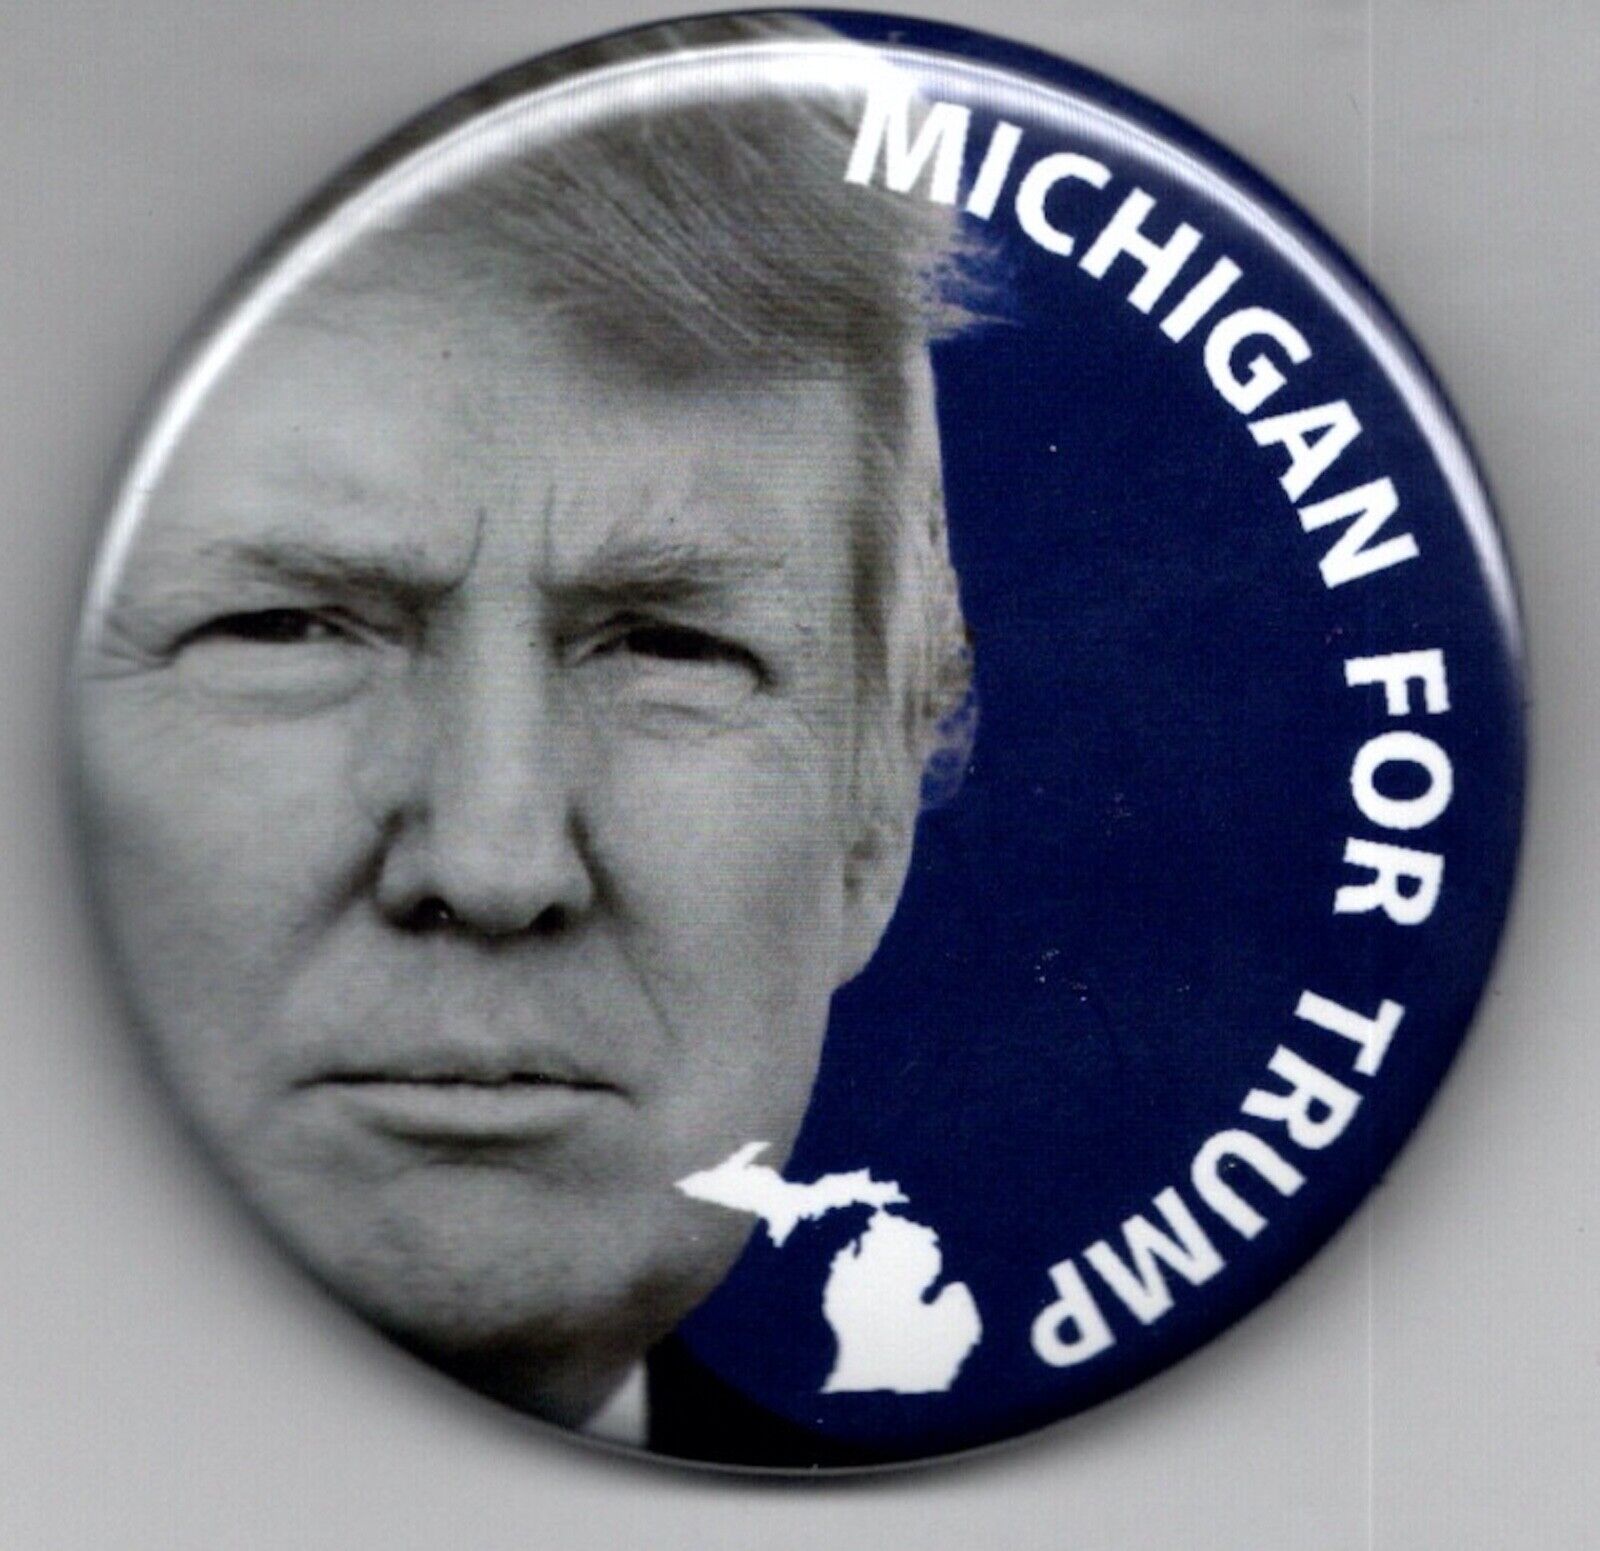 Michigan for Donald Trump 2024 campaign button pinback